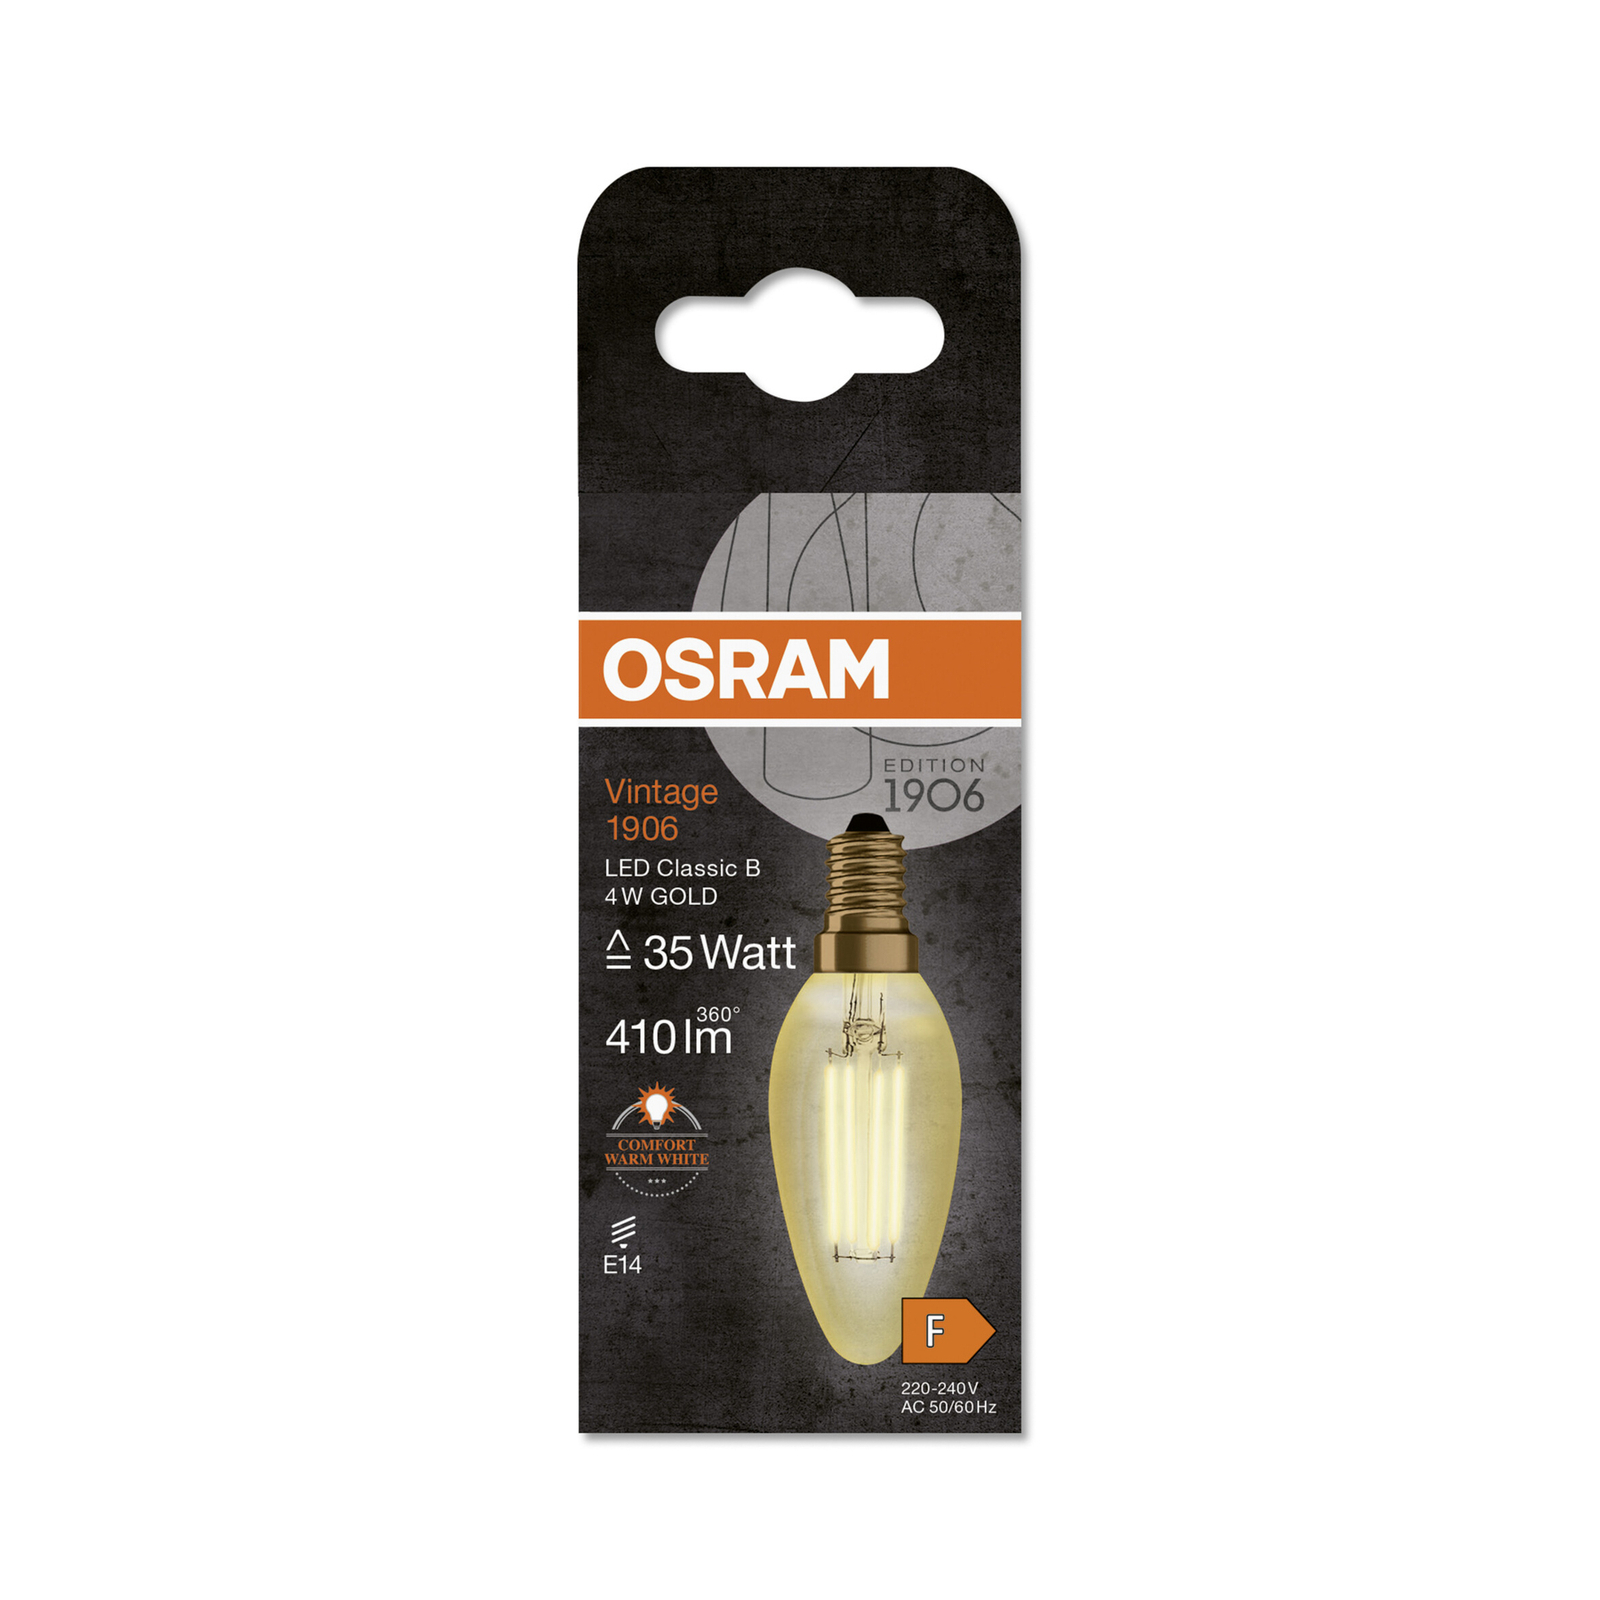 OSRAM kaarslamp Vintage 1906, E14 gloeidraad 4W 824 goud